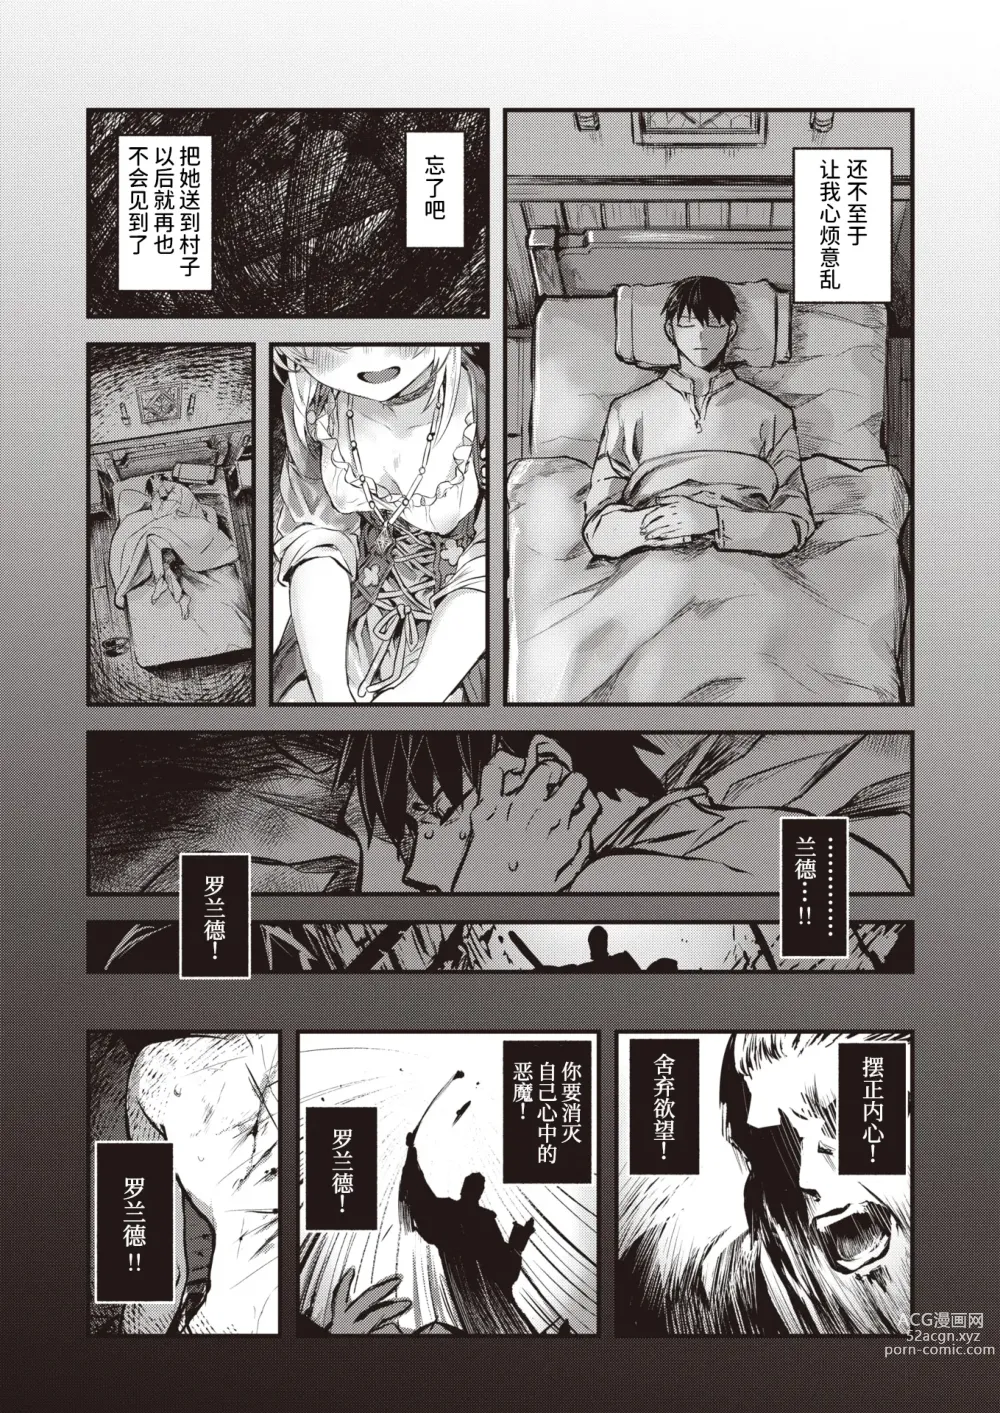 Page 5 of manga 侵入梦境的淫欲 前篇